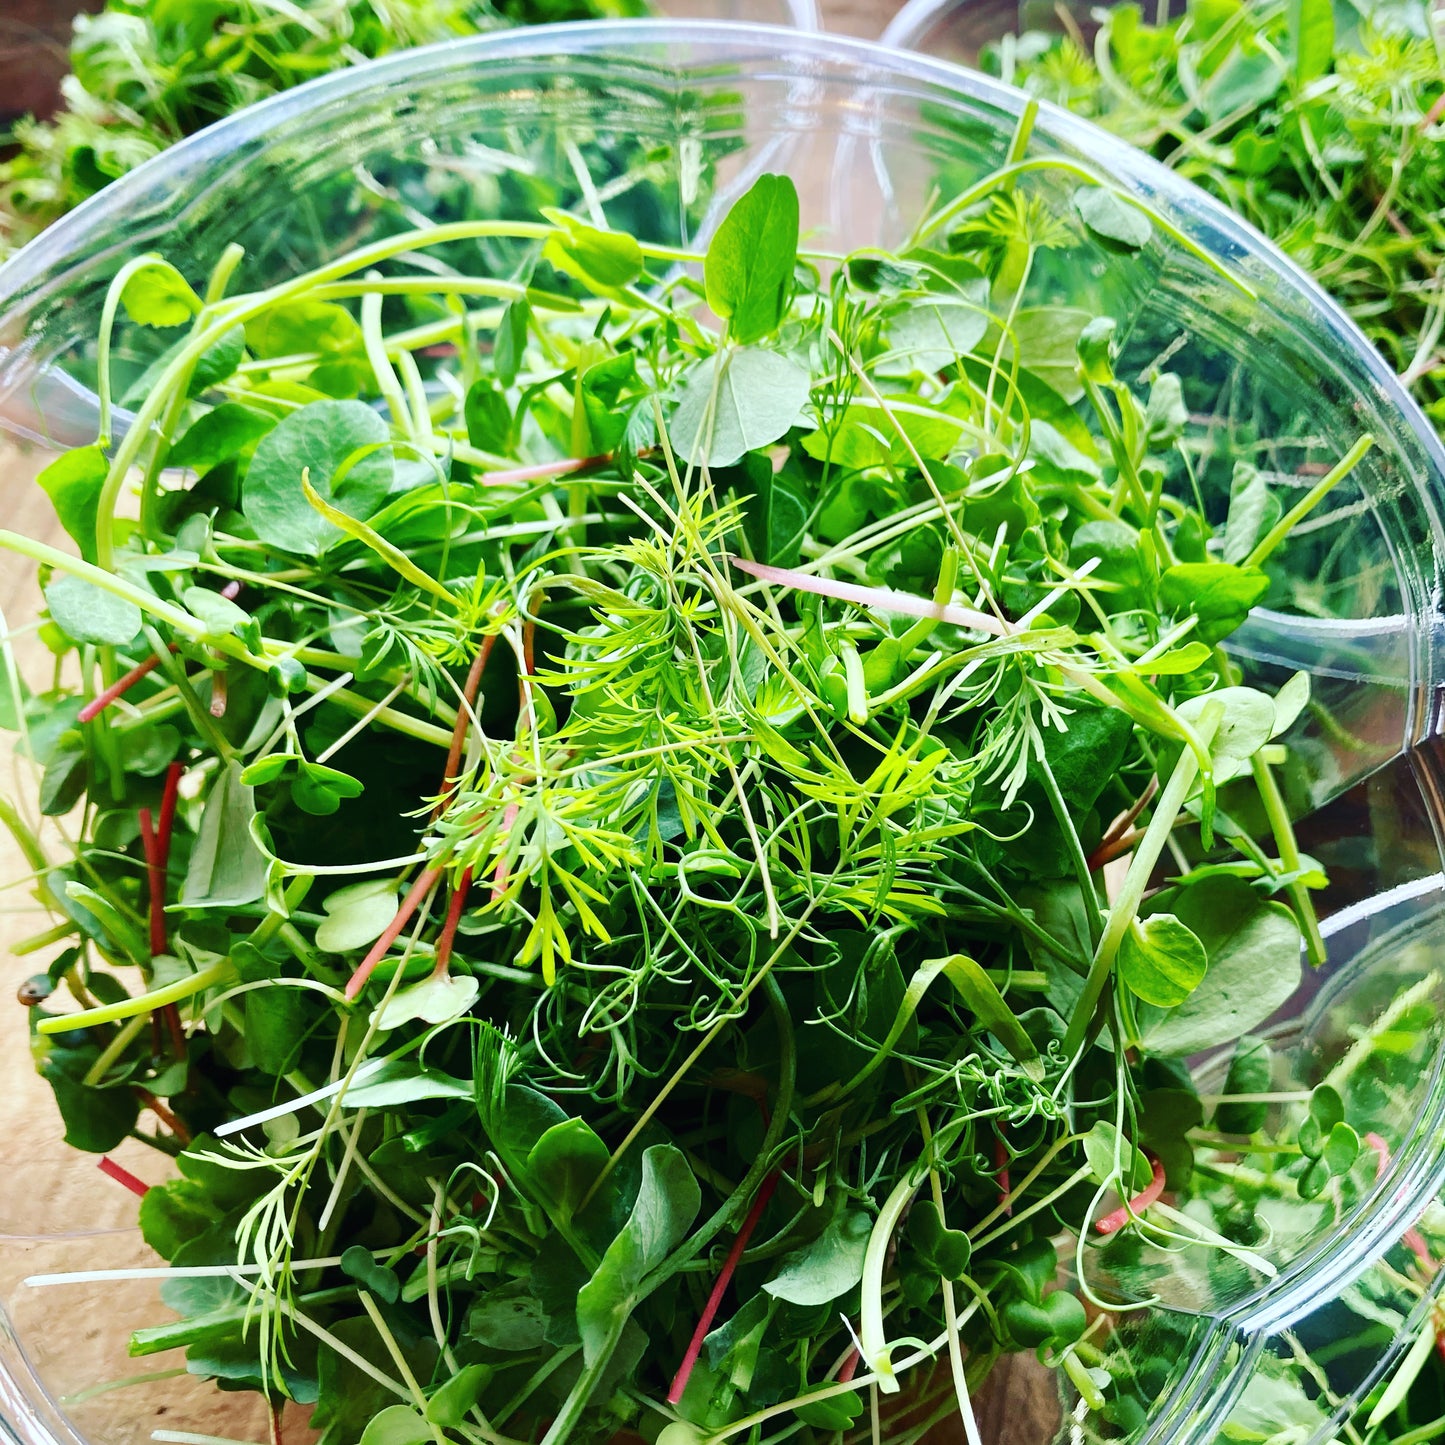 Microgreen Salad Mix